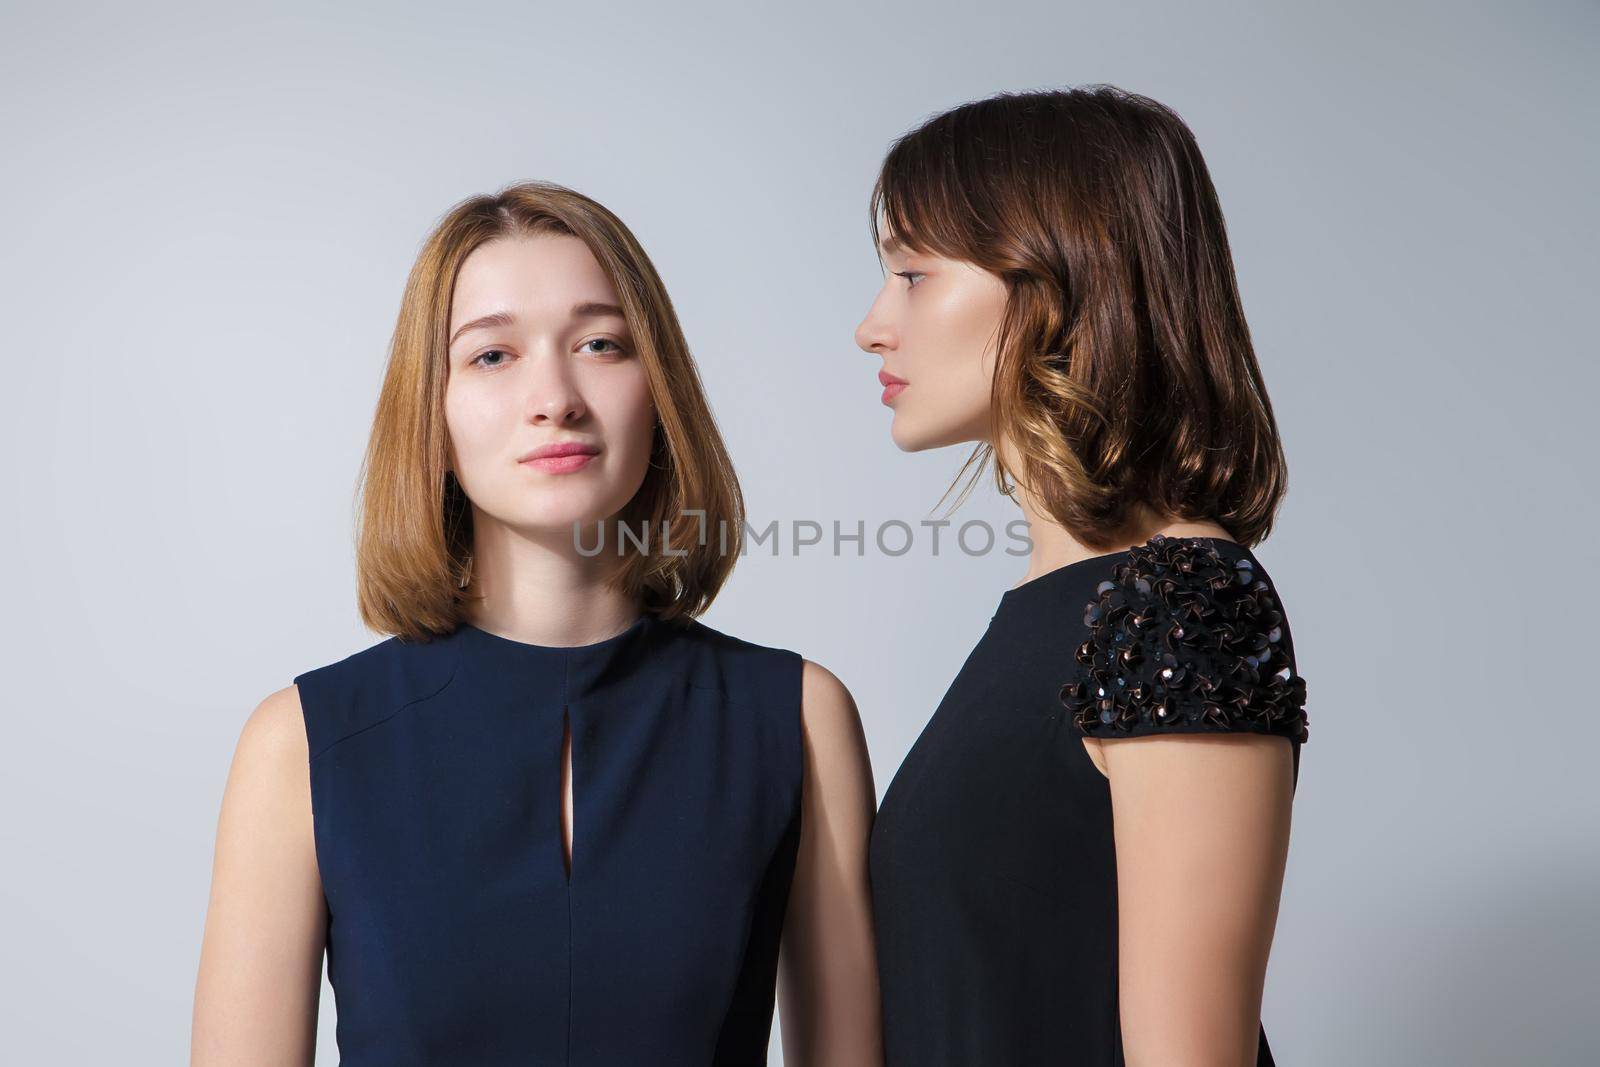 Two beautiful woman posing in dresses by Julenochek